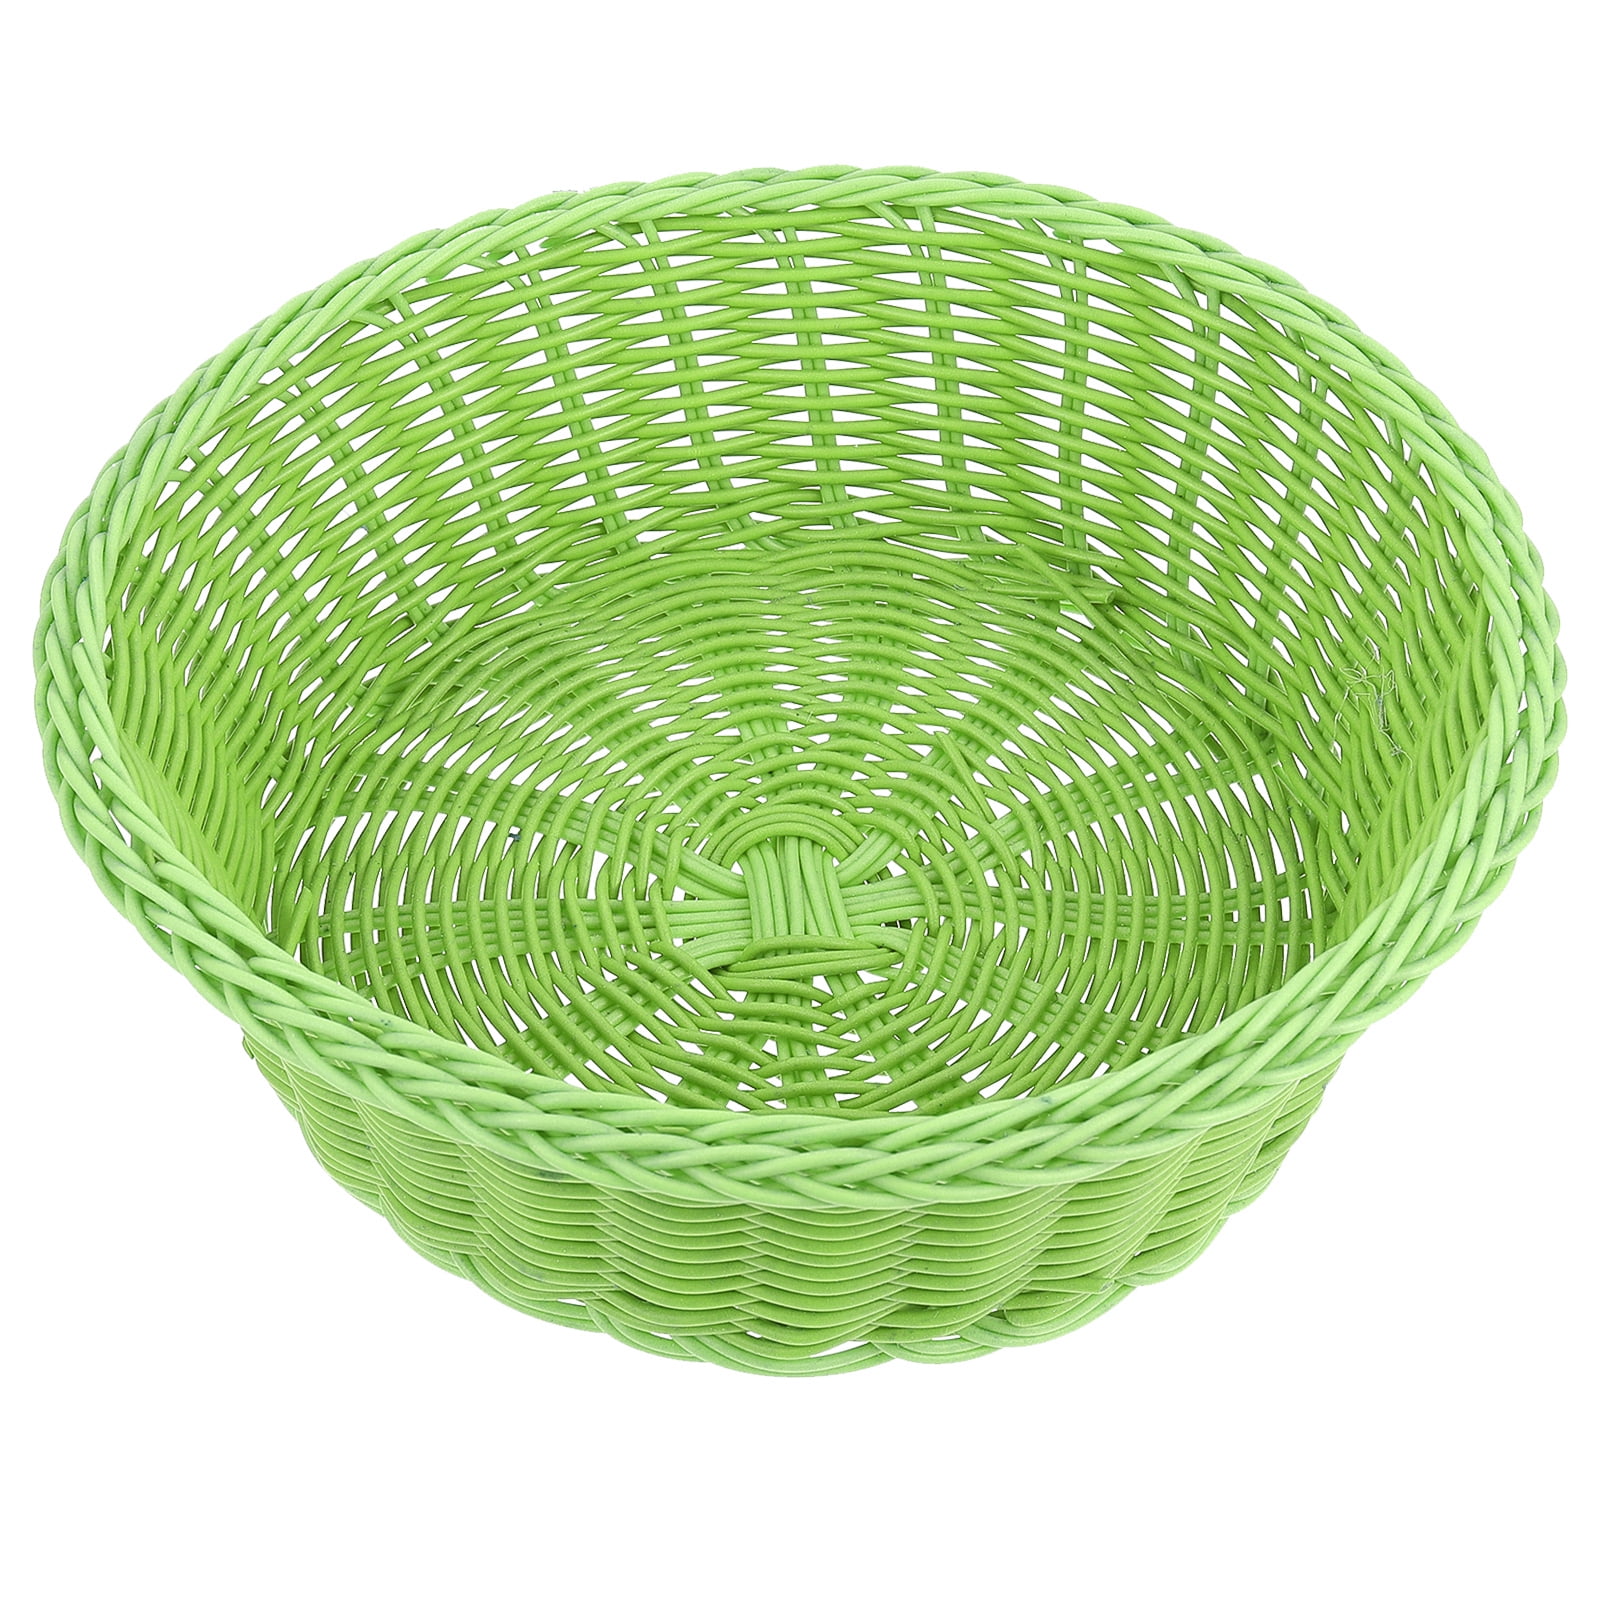 Set of 3 Baskets Oblong - 8 3/4 x 4 1/2 x 1 3/4 Rattan Serving Basket MM Foodservice Plastic Rattan Basket